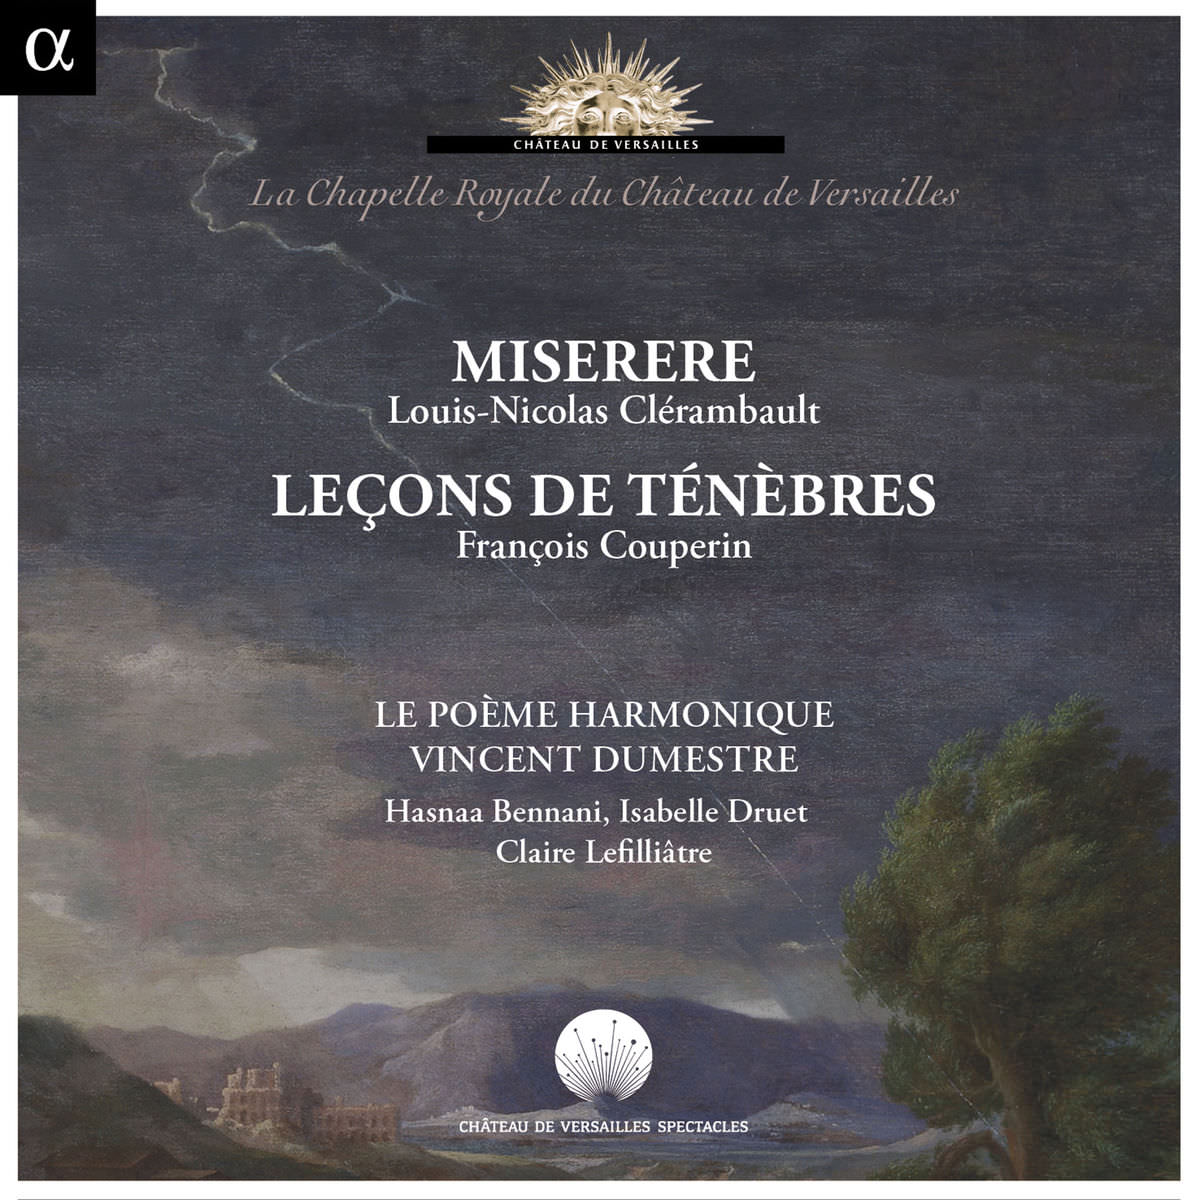 Le Poeme Harmonique, Vincent Dumestre - Clerambault: Miserere; Couperin: Lecons de tenebres (2014) [FLAC 24bit/88,2kHz]